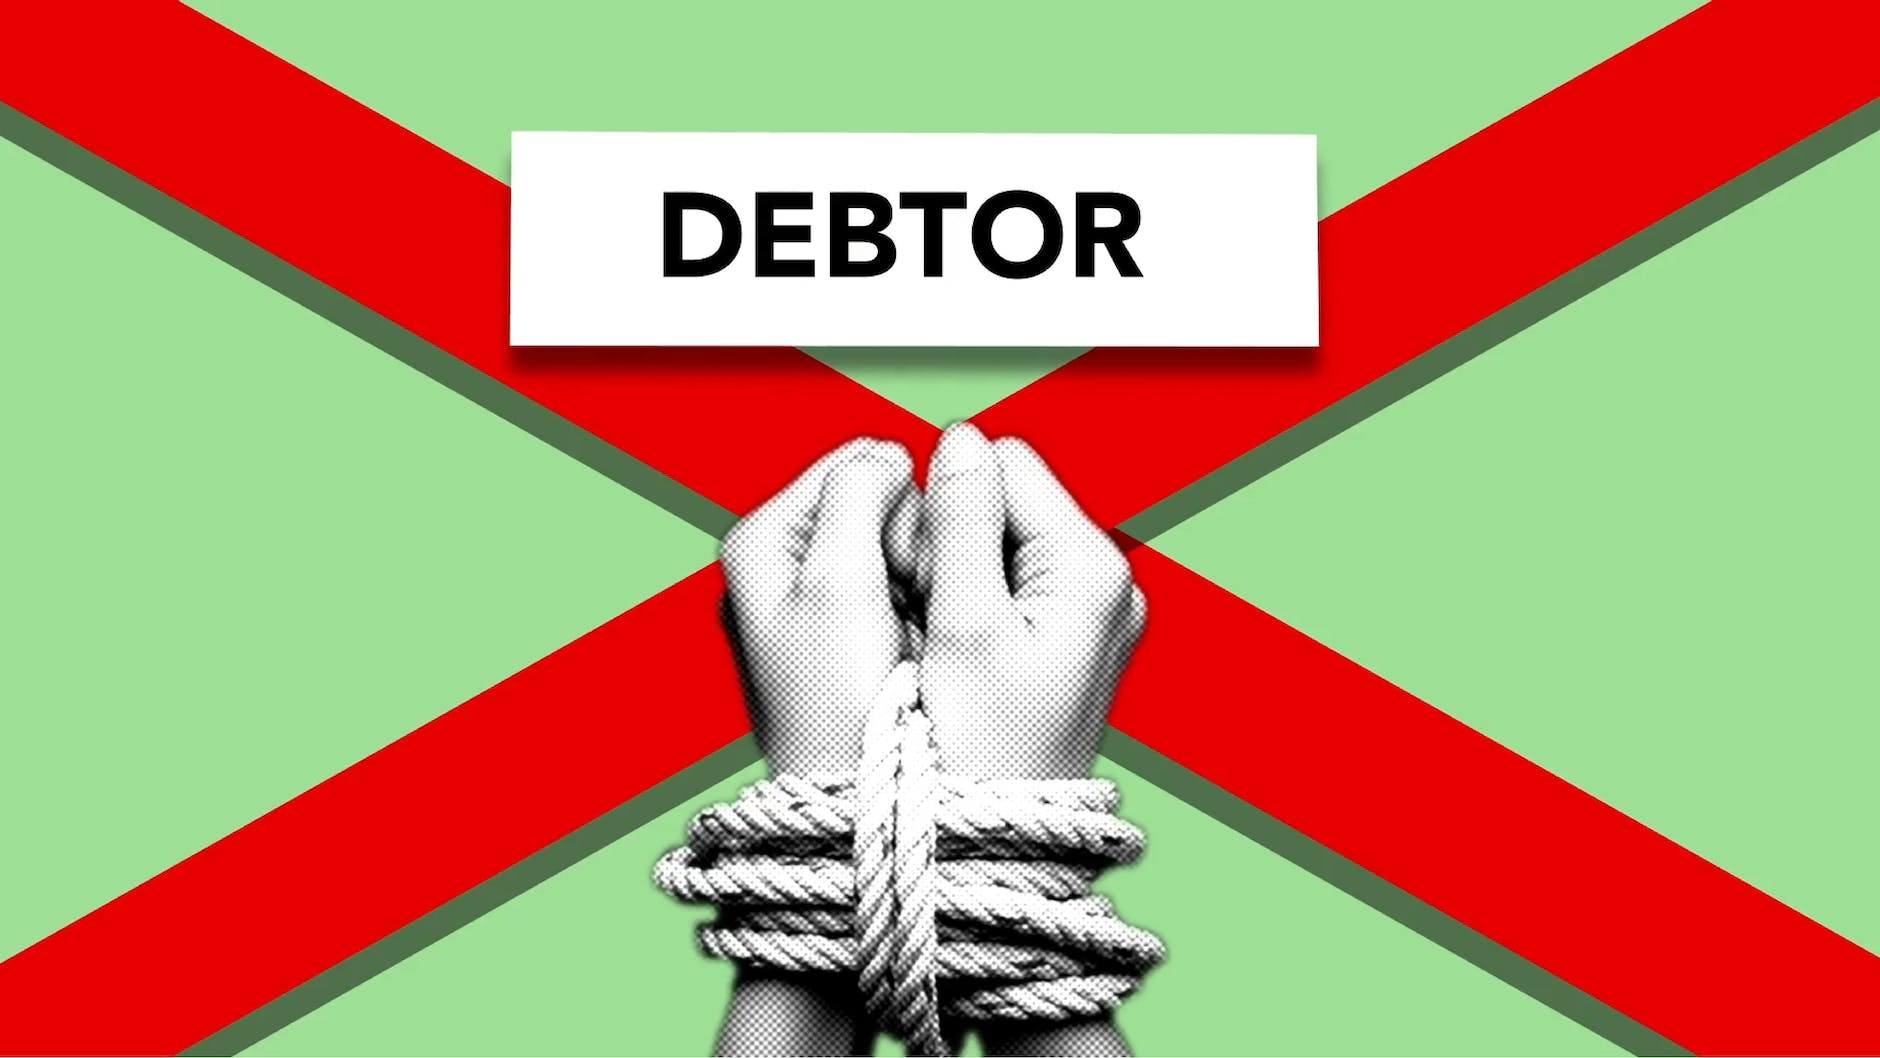 Schuldenlast drukt steeds zwaarder op bedrijven